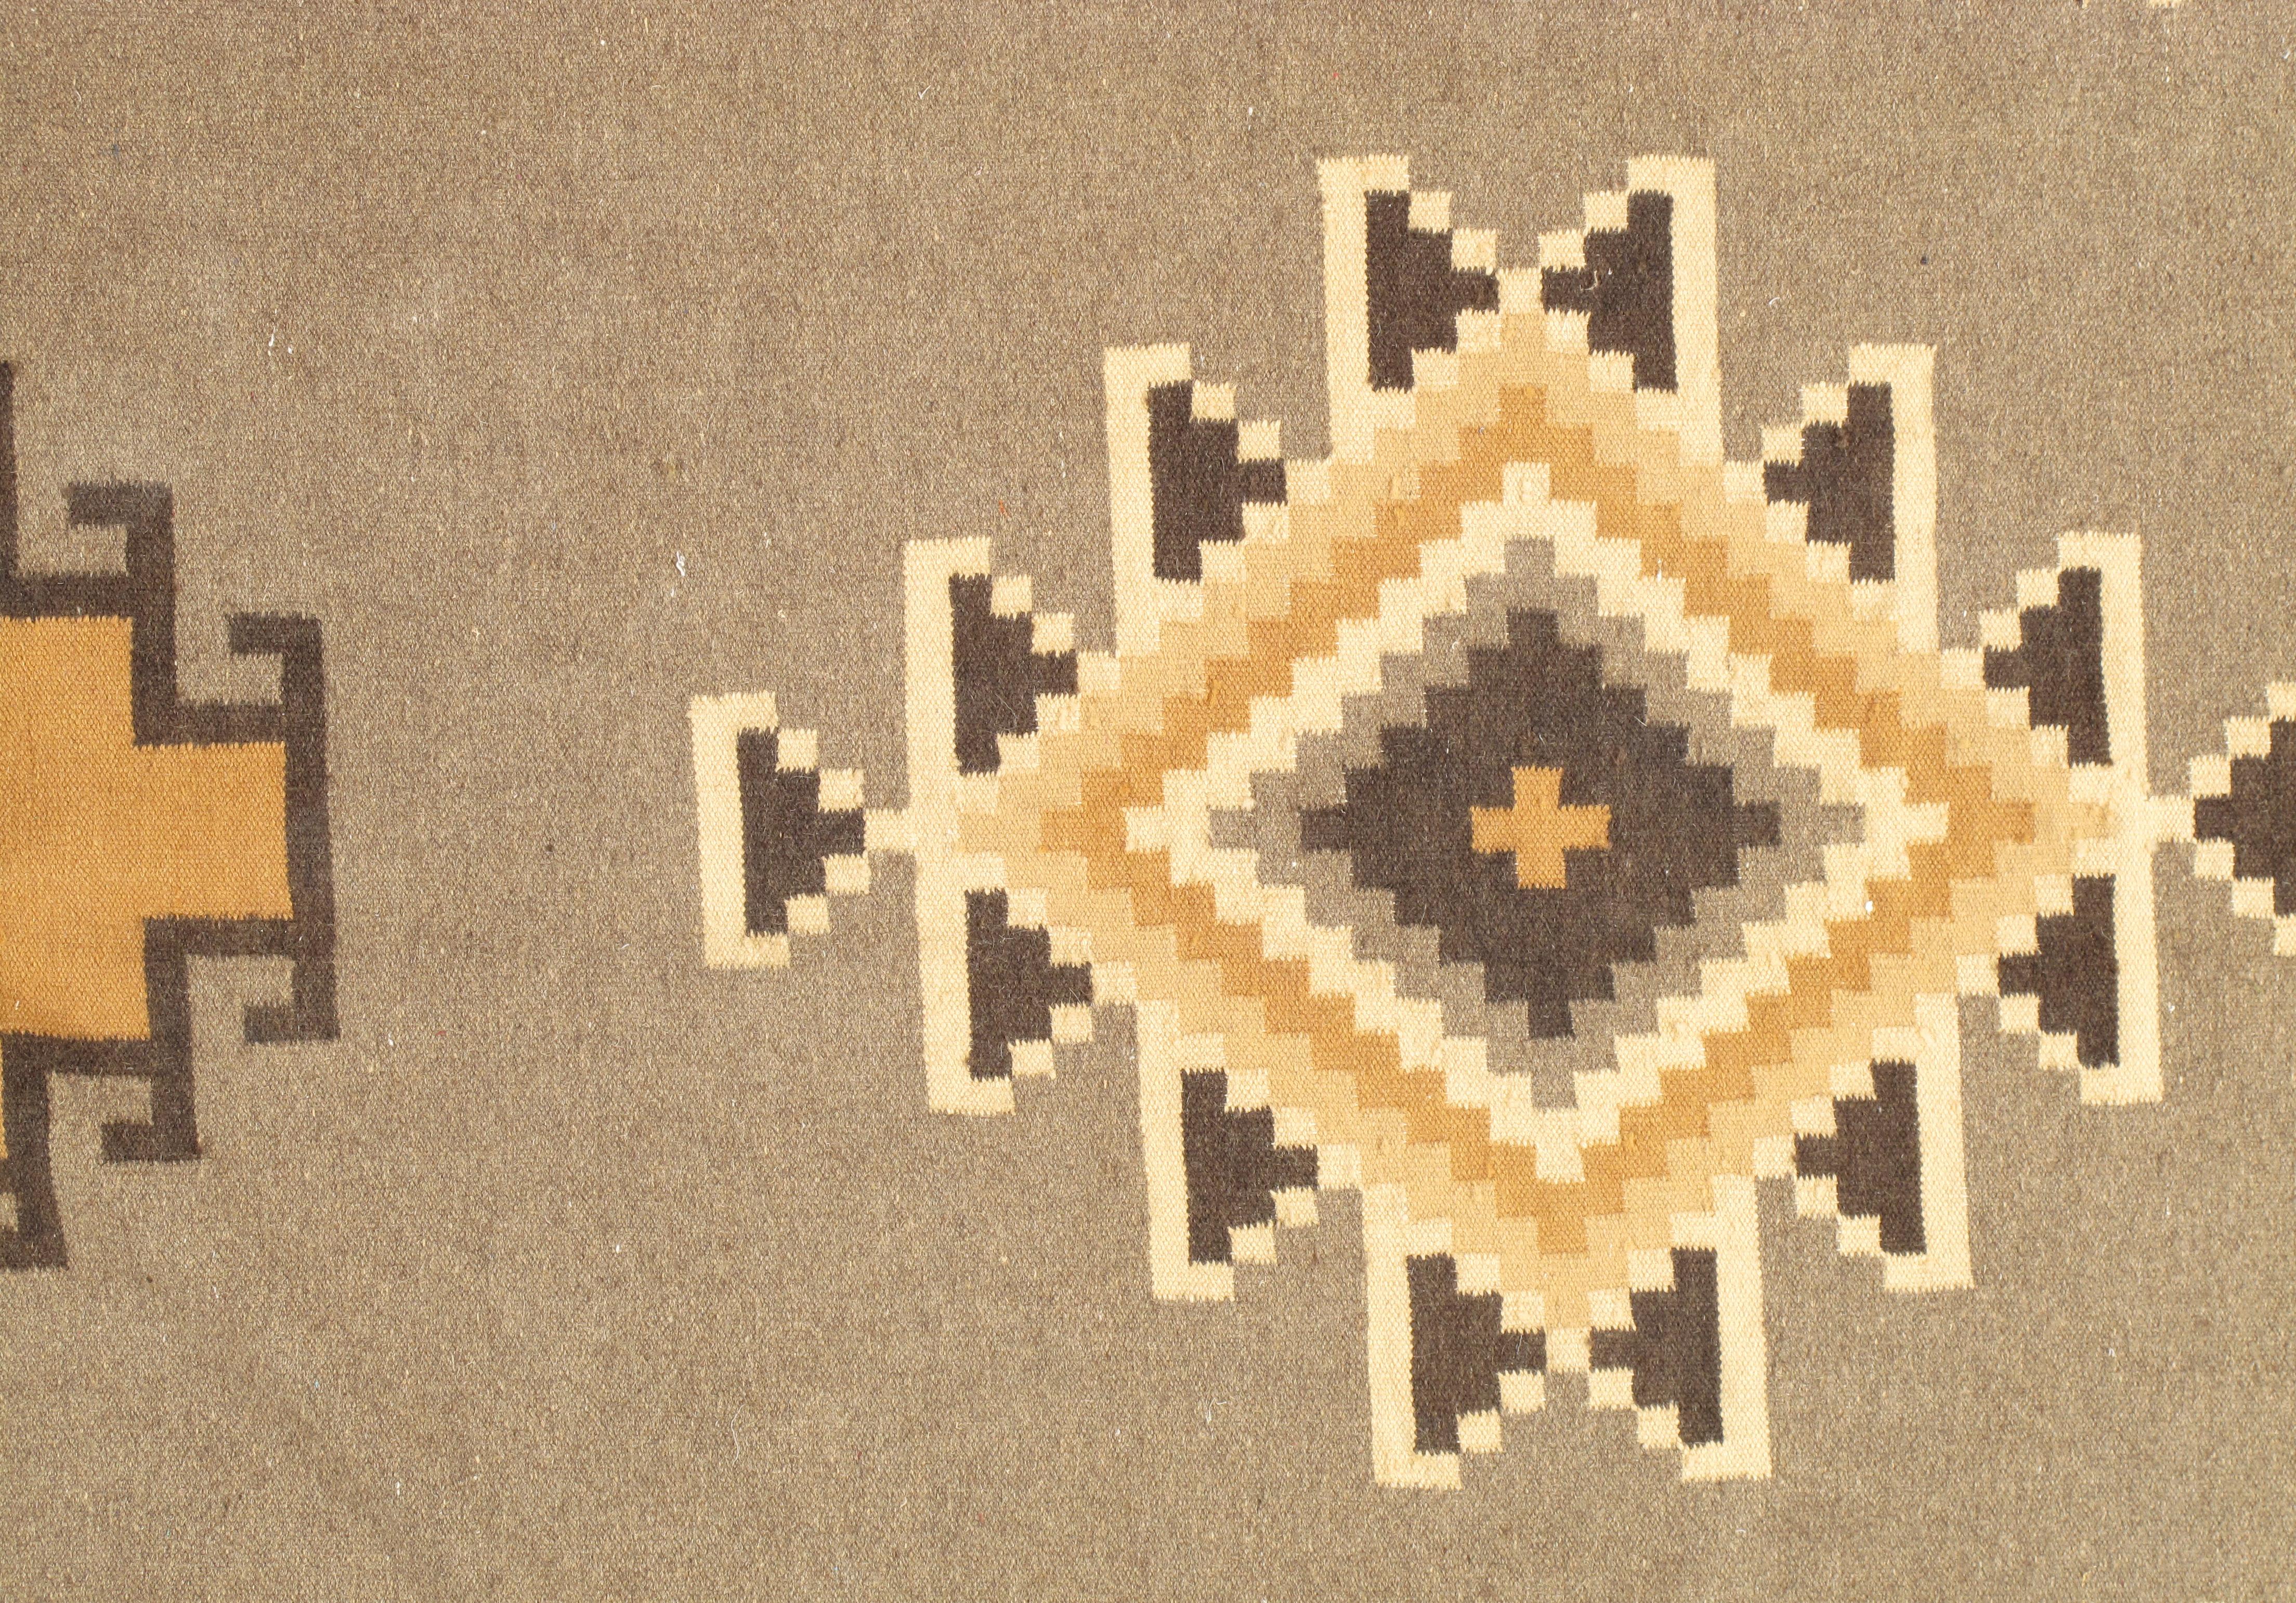 North American Vintage Navajo Rug, Handmade Wool Oriental Rug, Caramel, Beige, Taupe and Brown